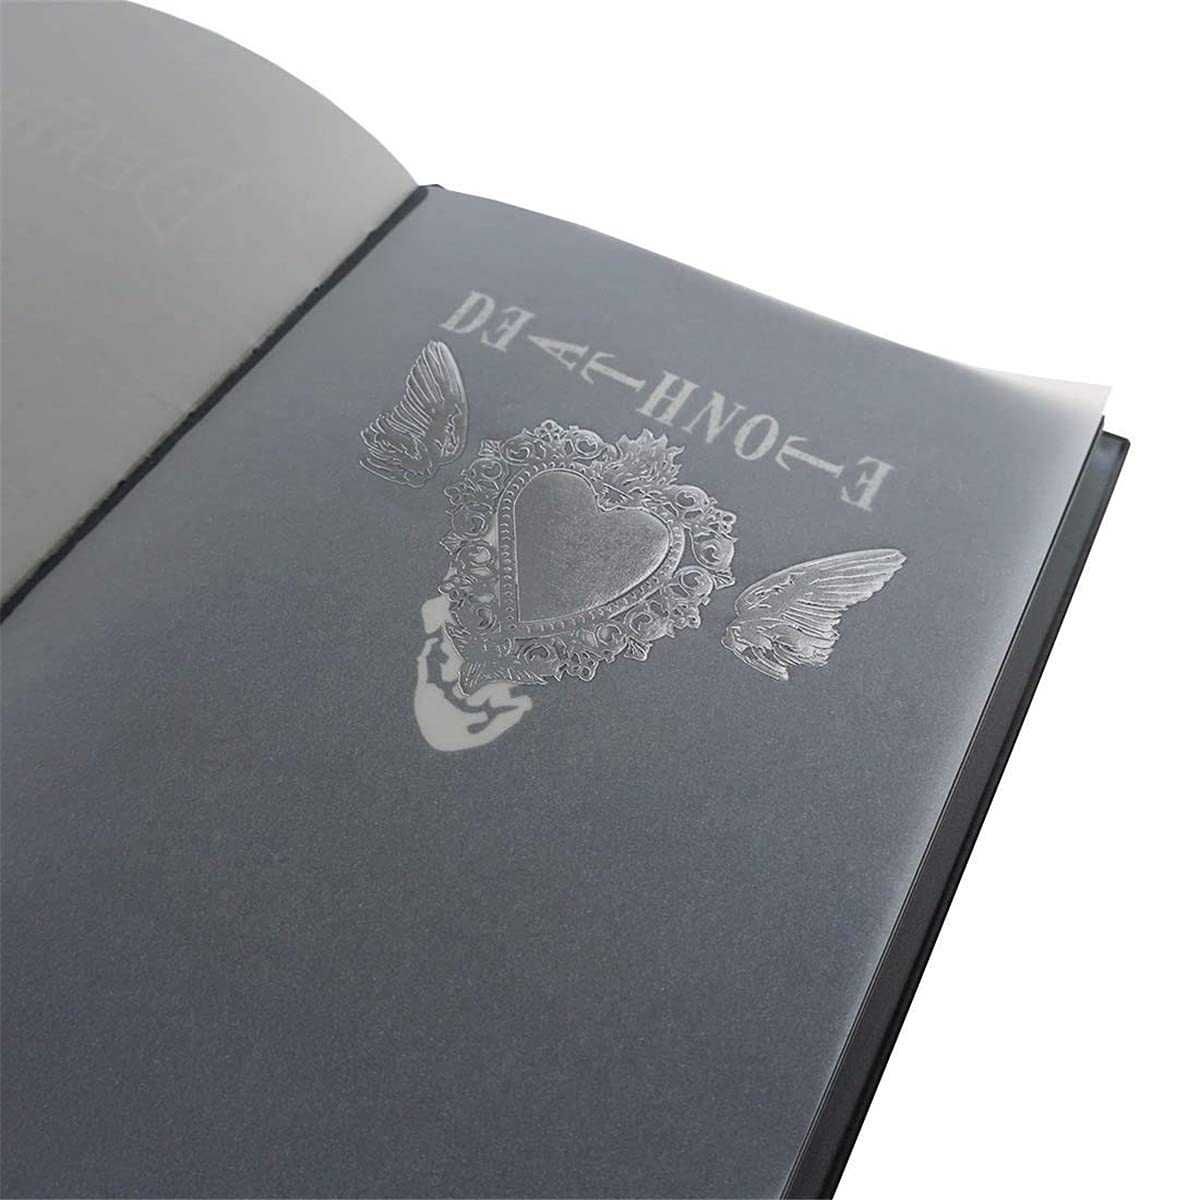 Death Note caderno + pena + colar L + marcador - NOVO - ENVIO GRÁTIS